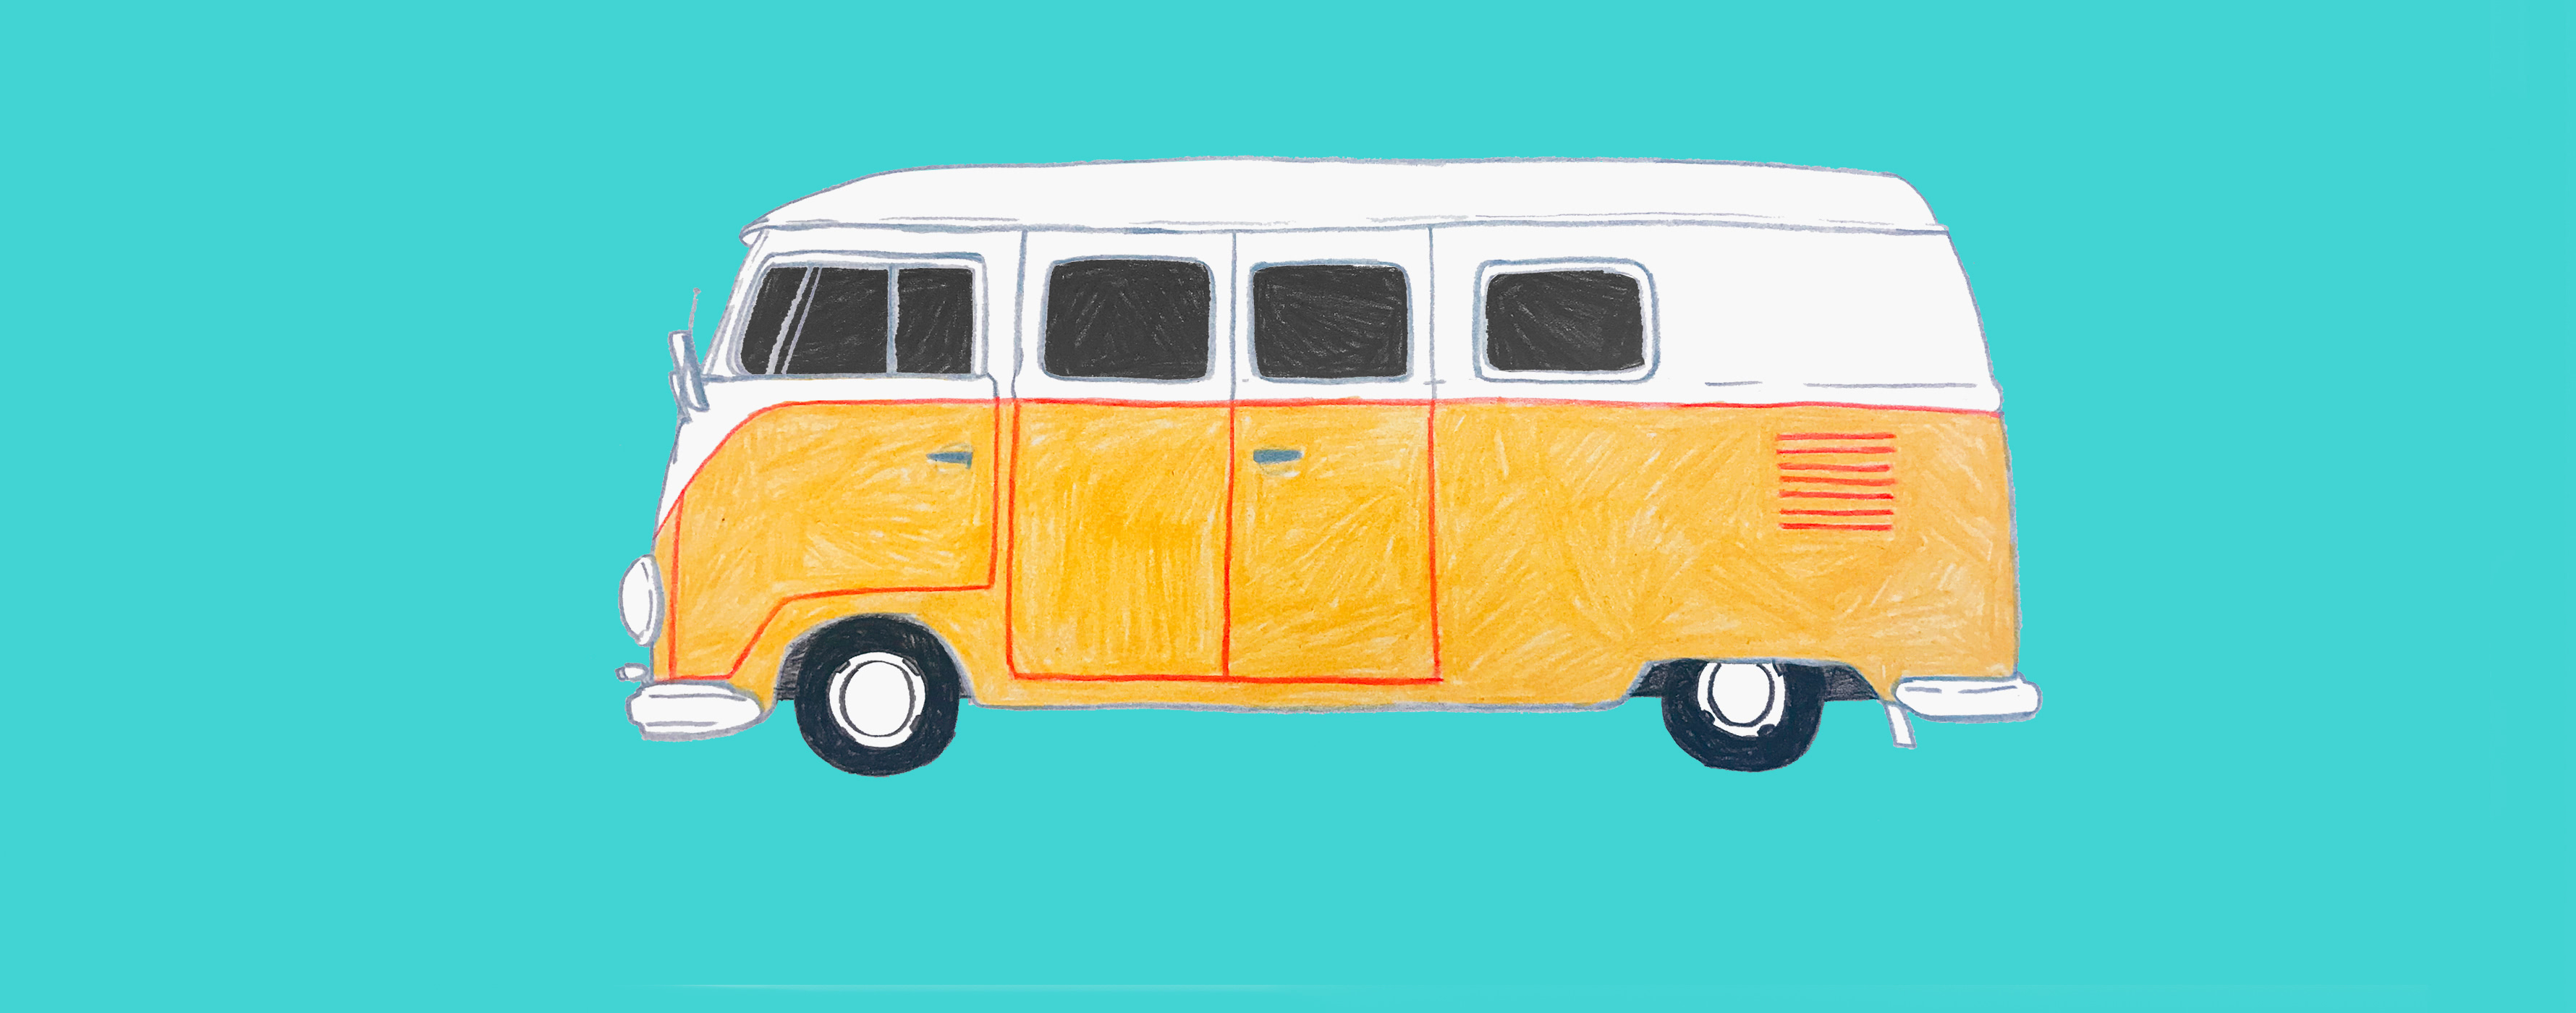 stylized graphic of a Volkswagen van